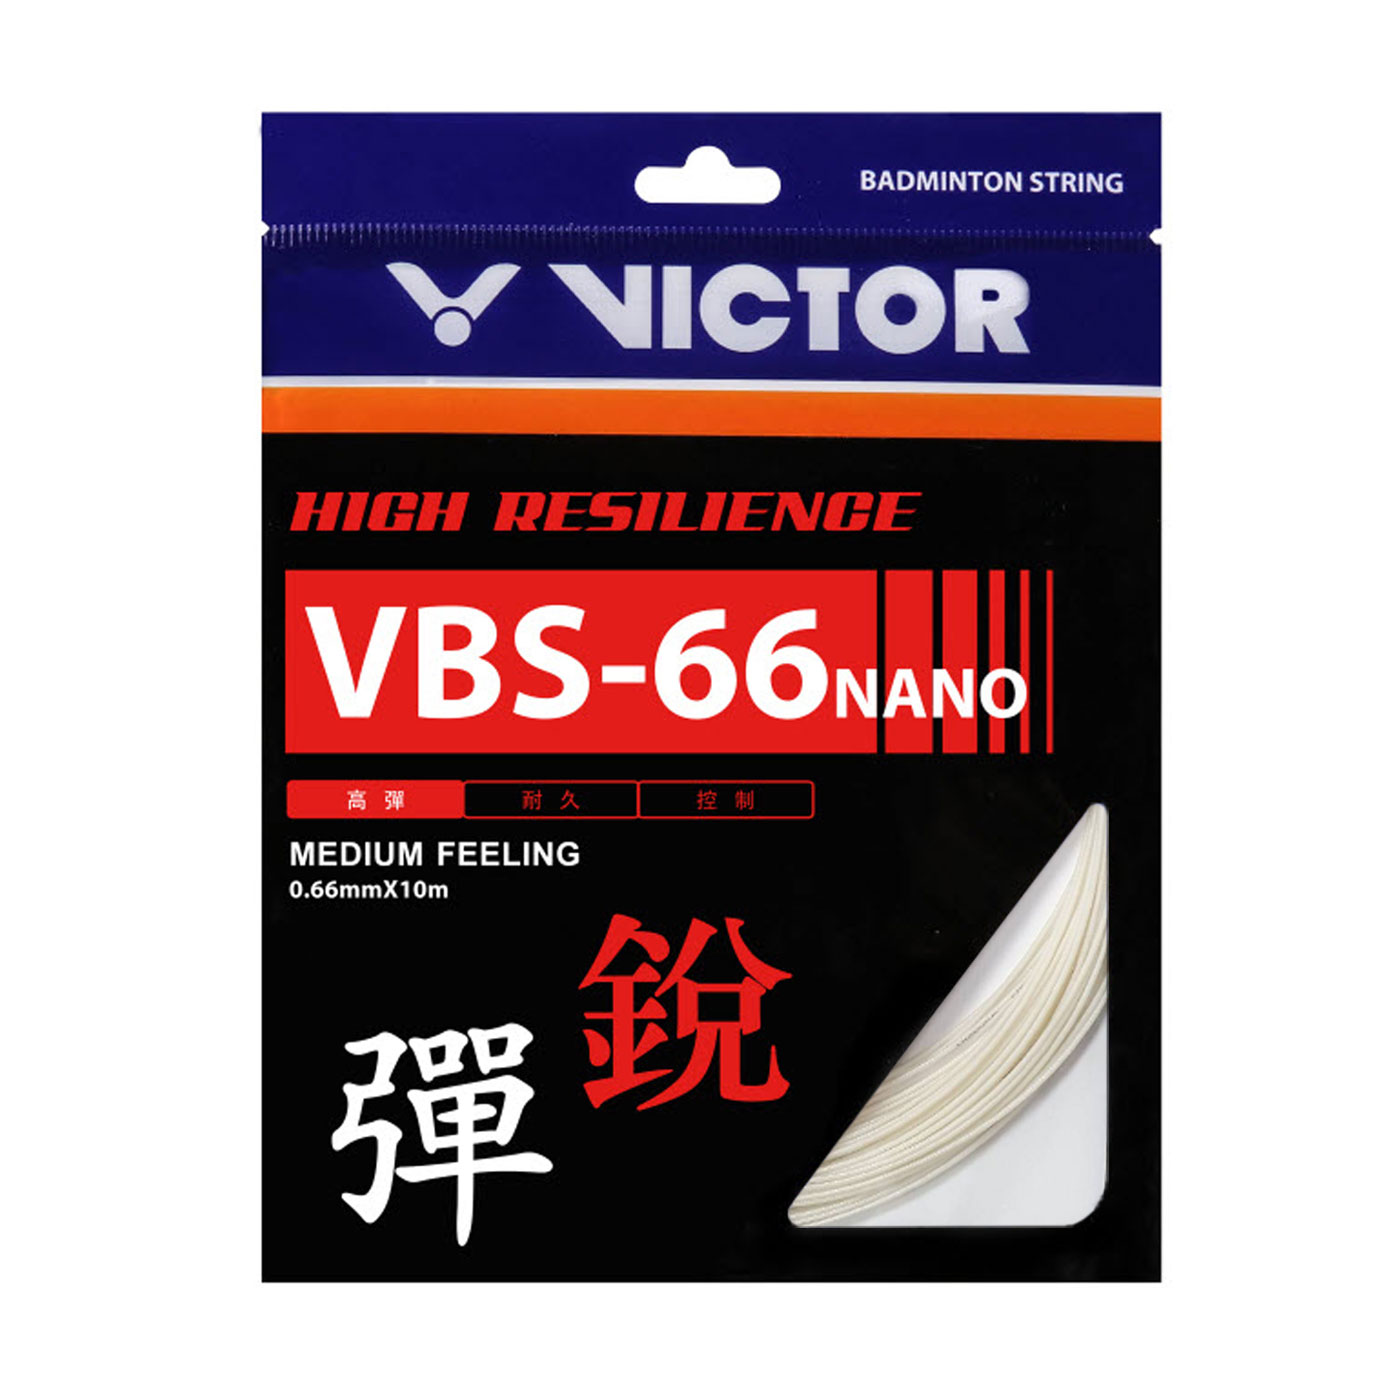 VICTOR 特定-高彈羽拍線-銳 VBS-66N-G - 白